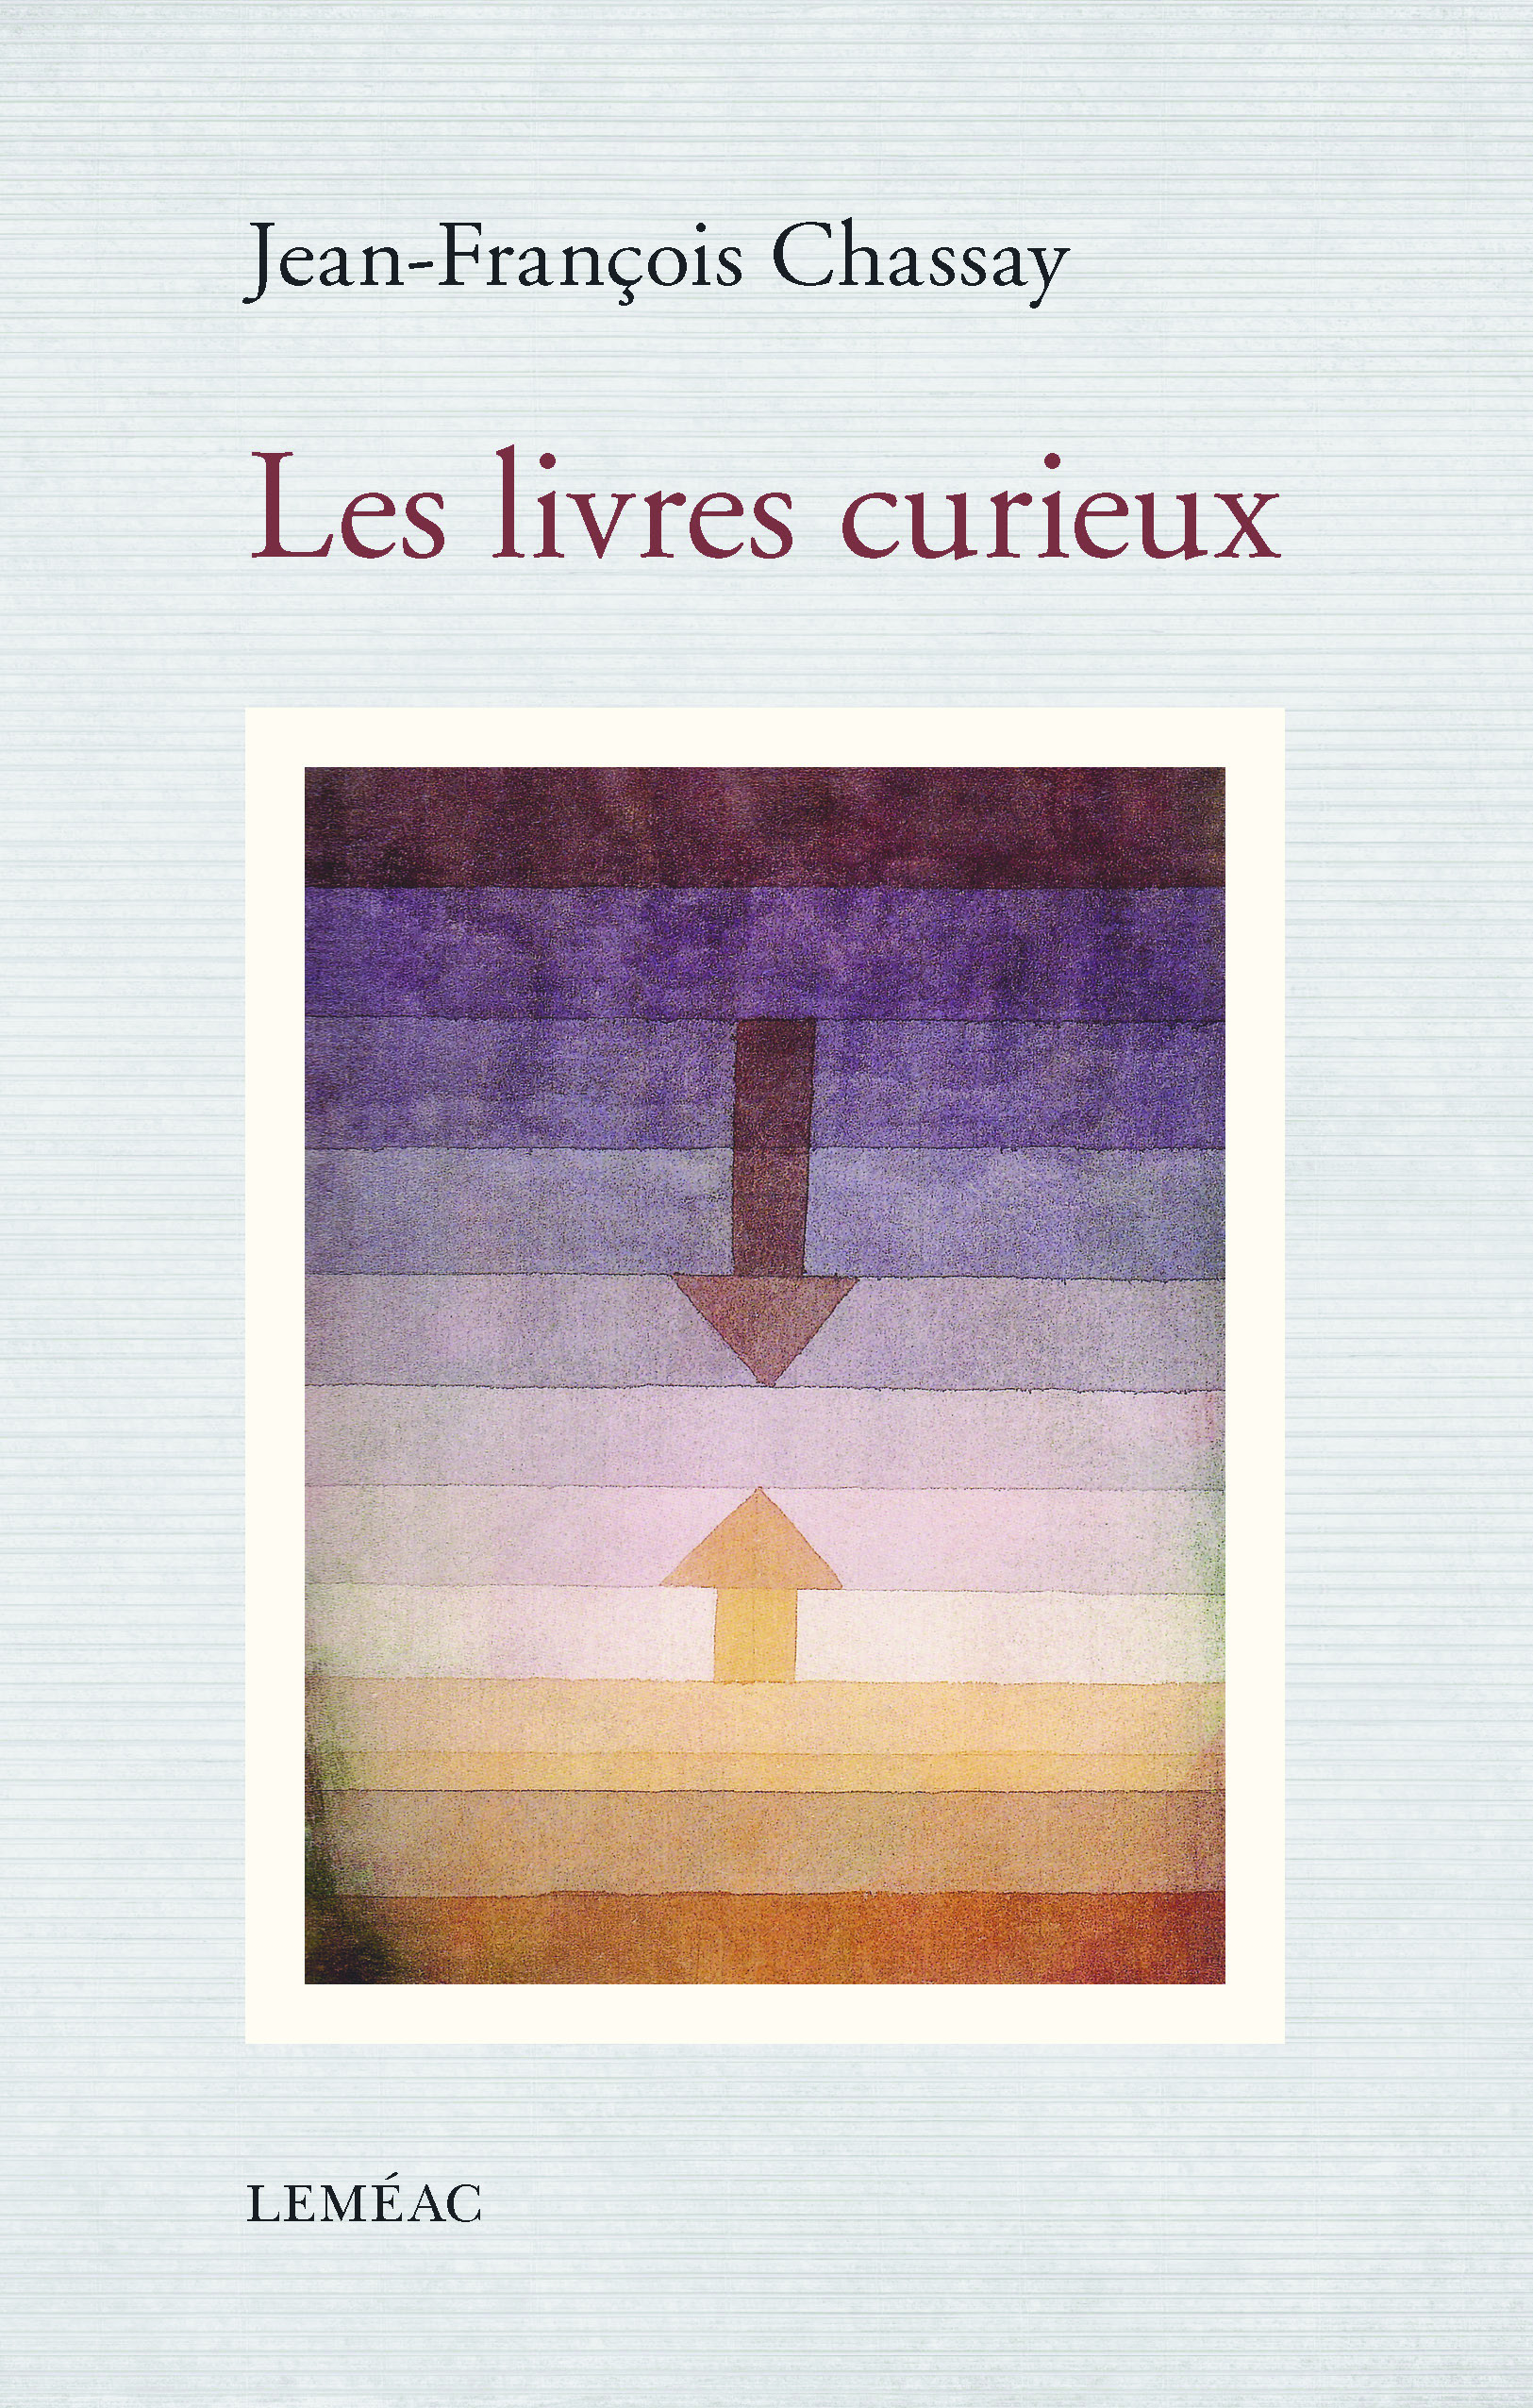 J.-F. Chassay, Les Livres curieux